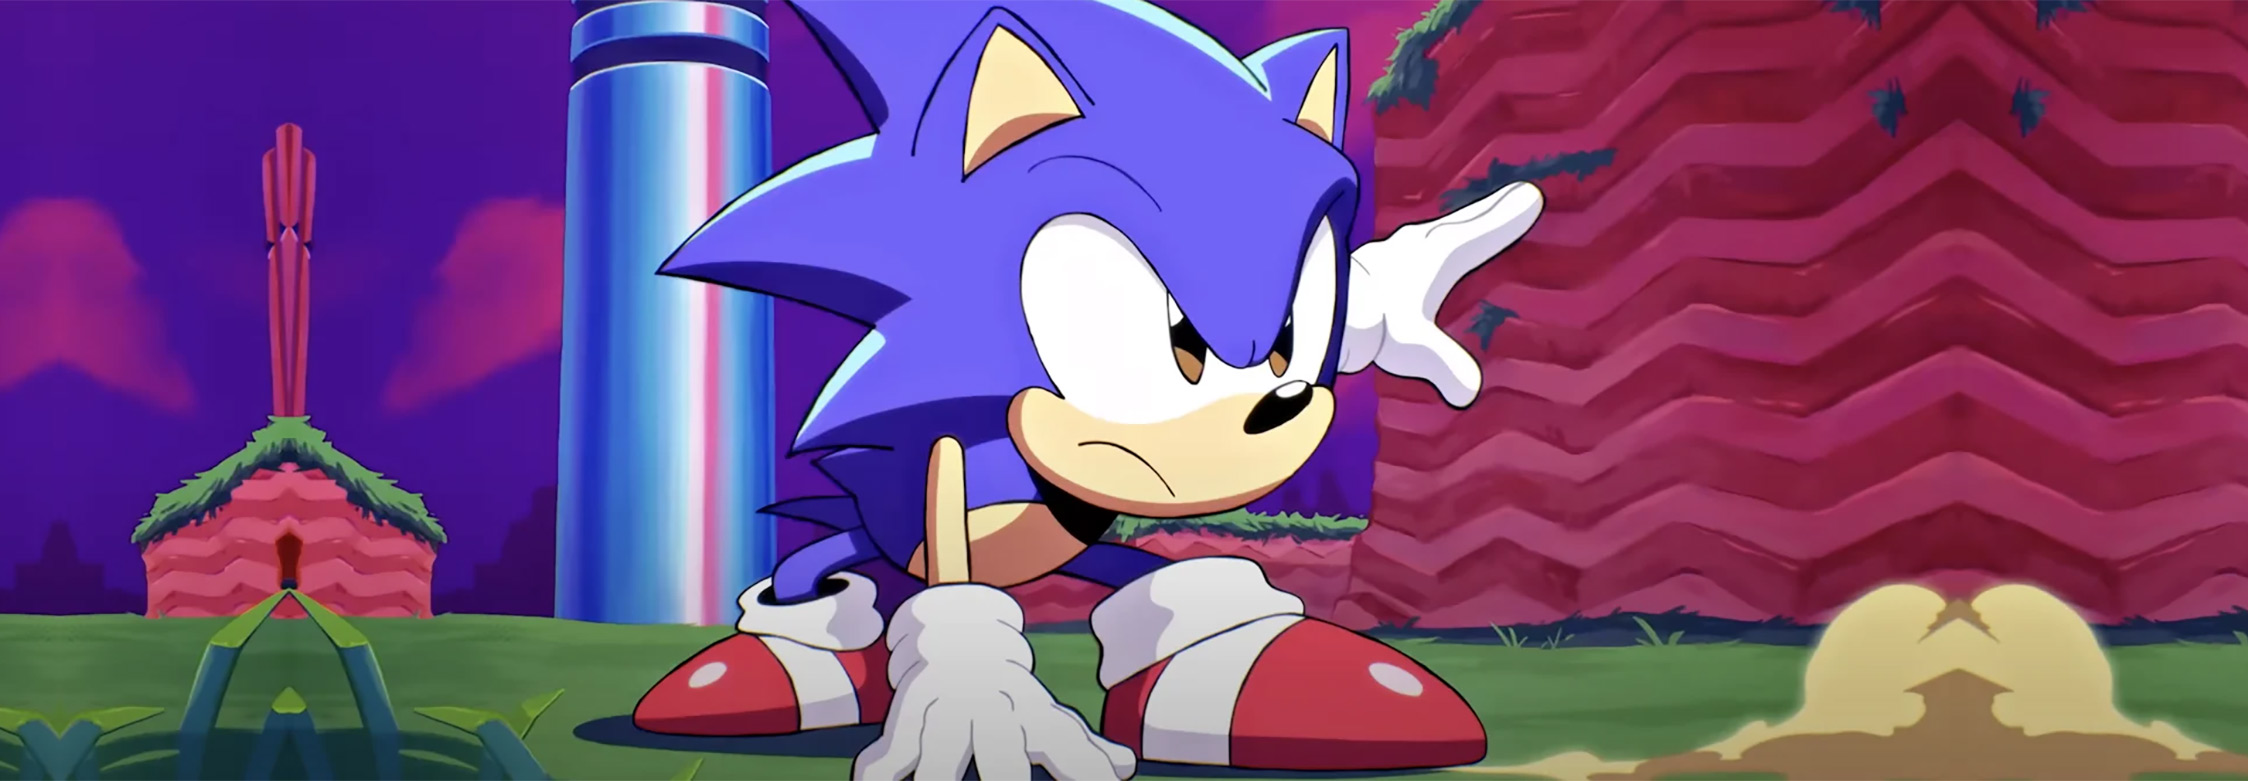 Retro Review: Sonic the Hedgehog (Genesis) - Zelda Dungeon